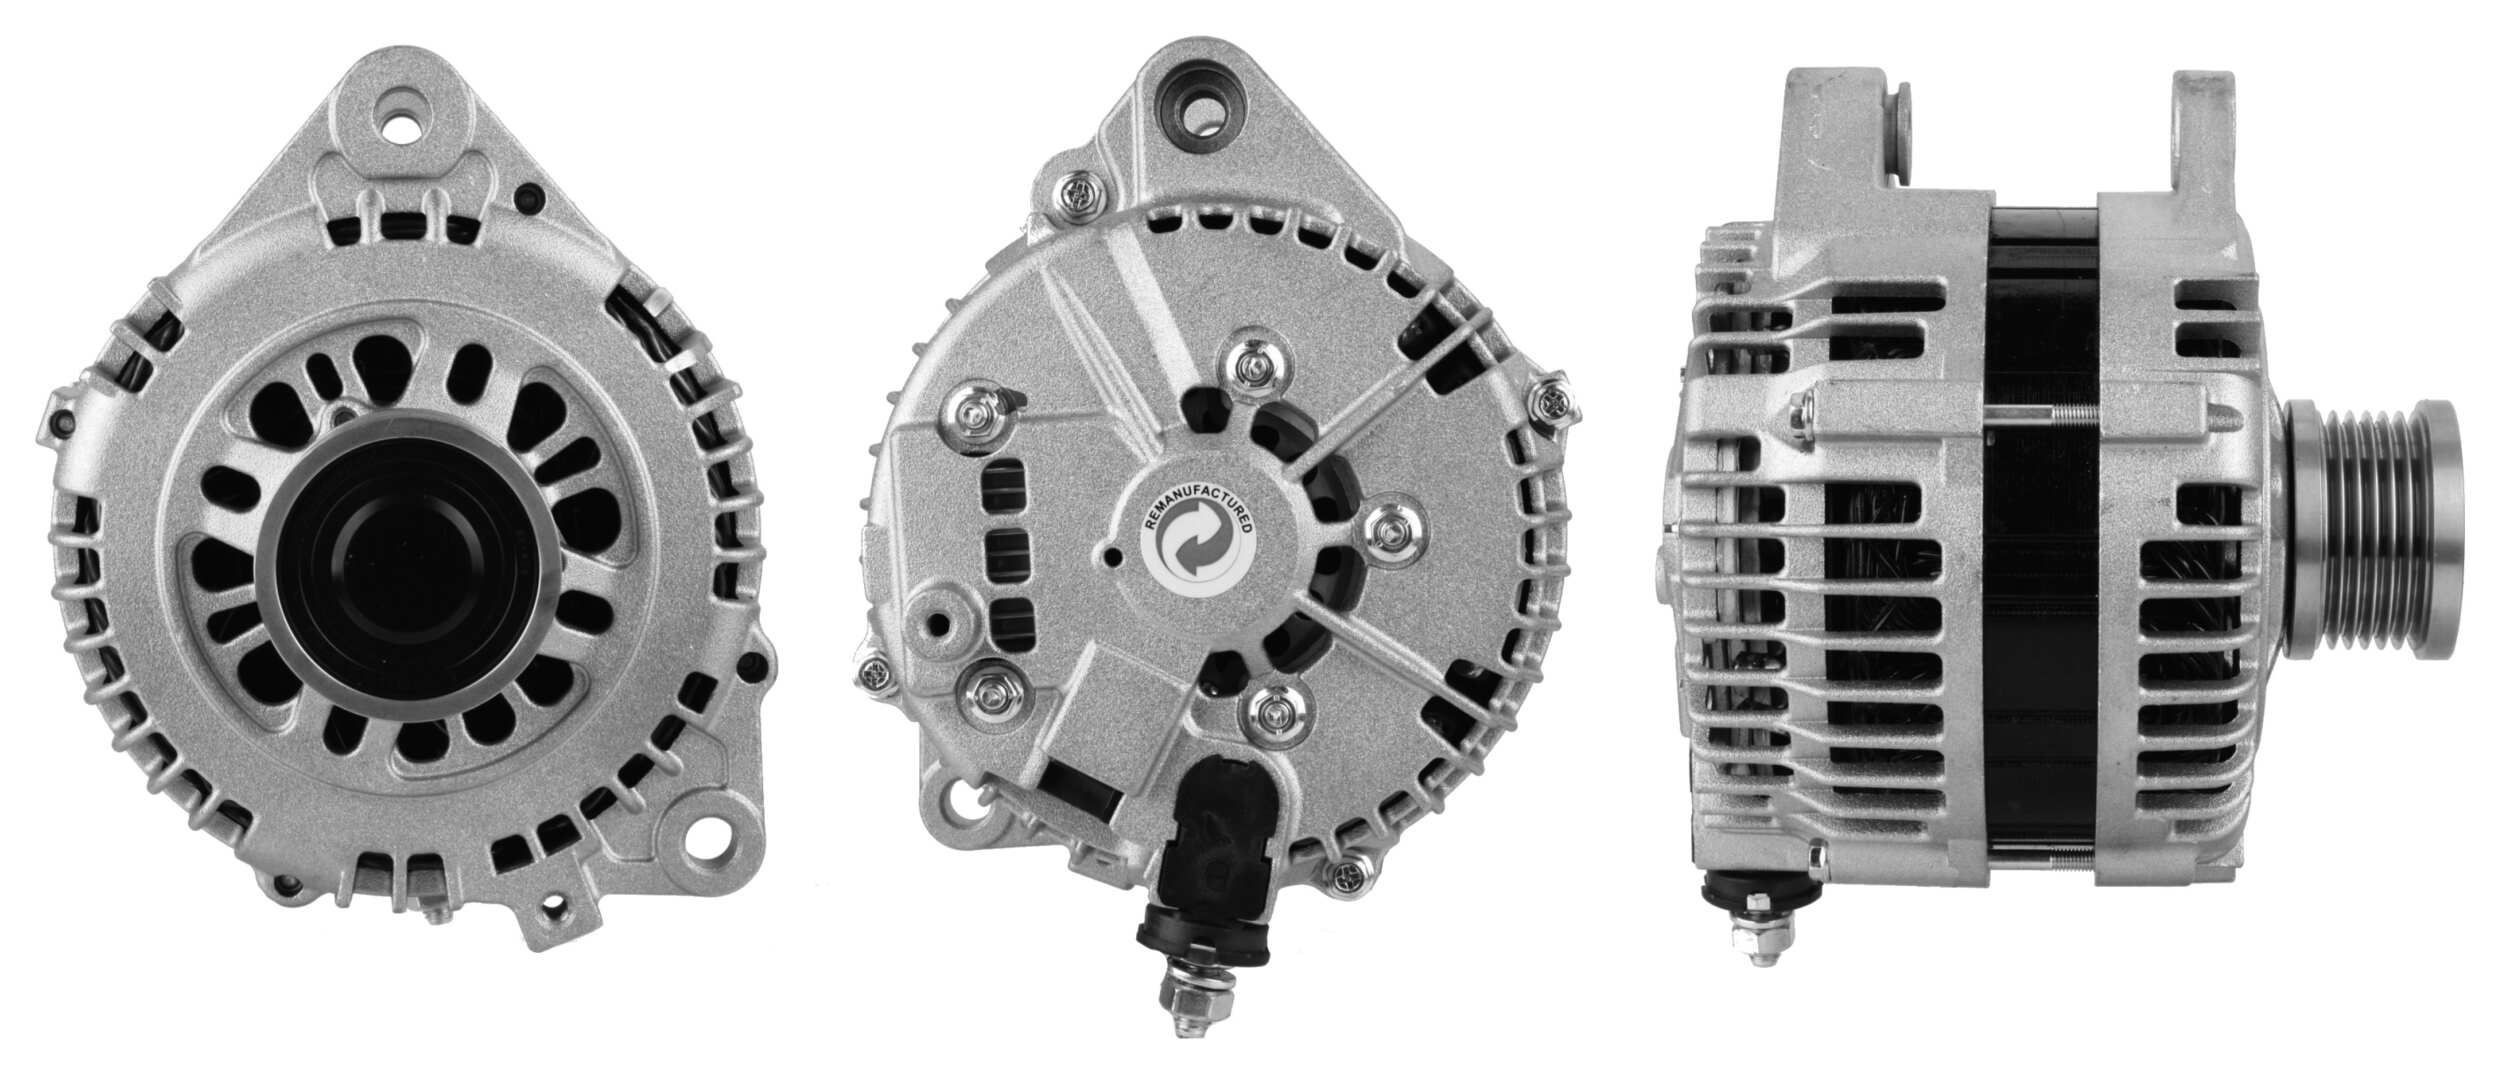 2271841102 DRI Generator NISSAN 12V, 110A, M8, L-S Plug 7, 0007, Ø 52 mm